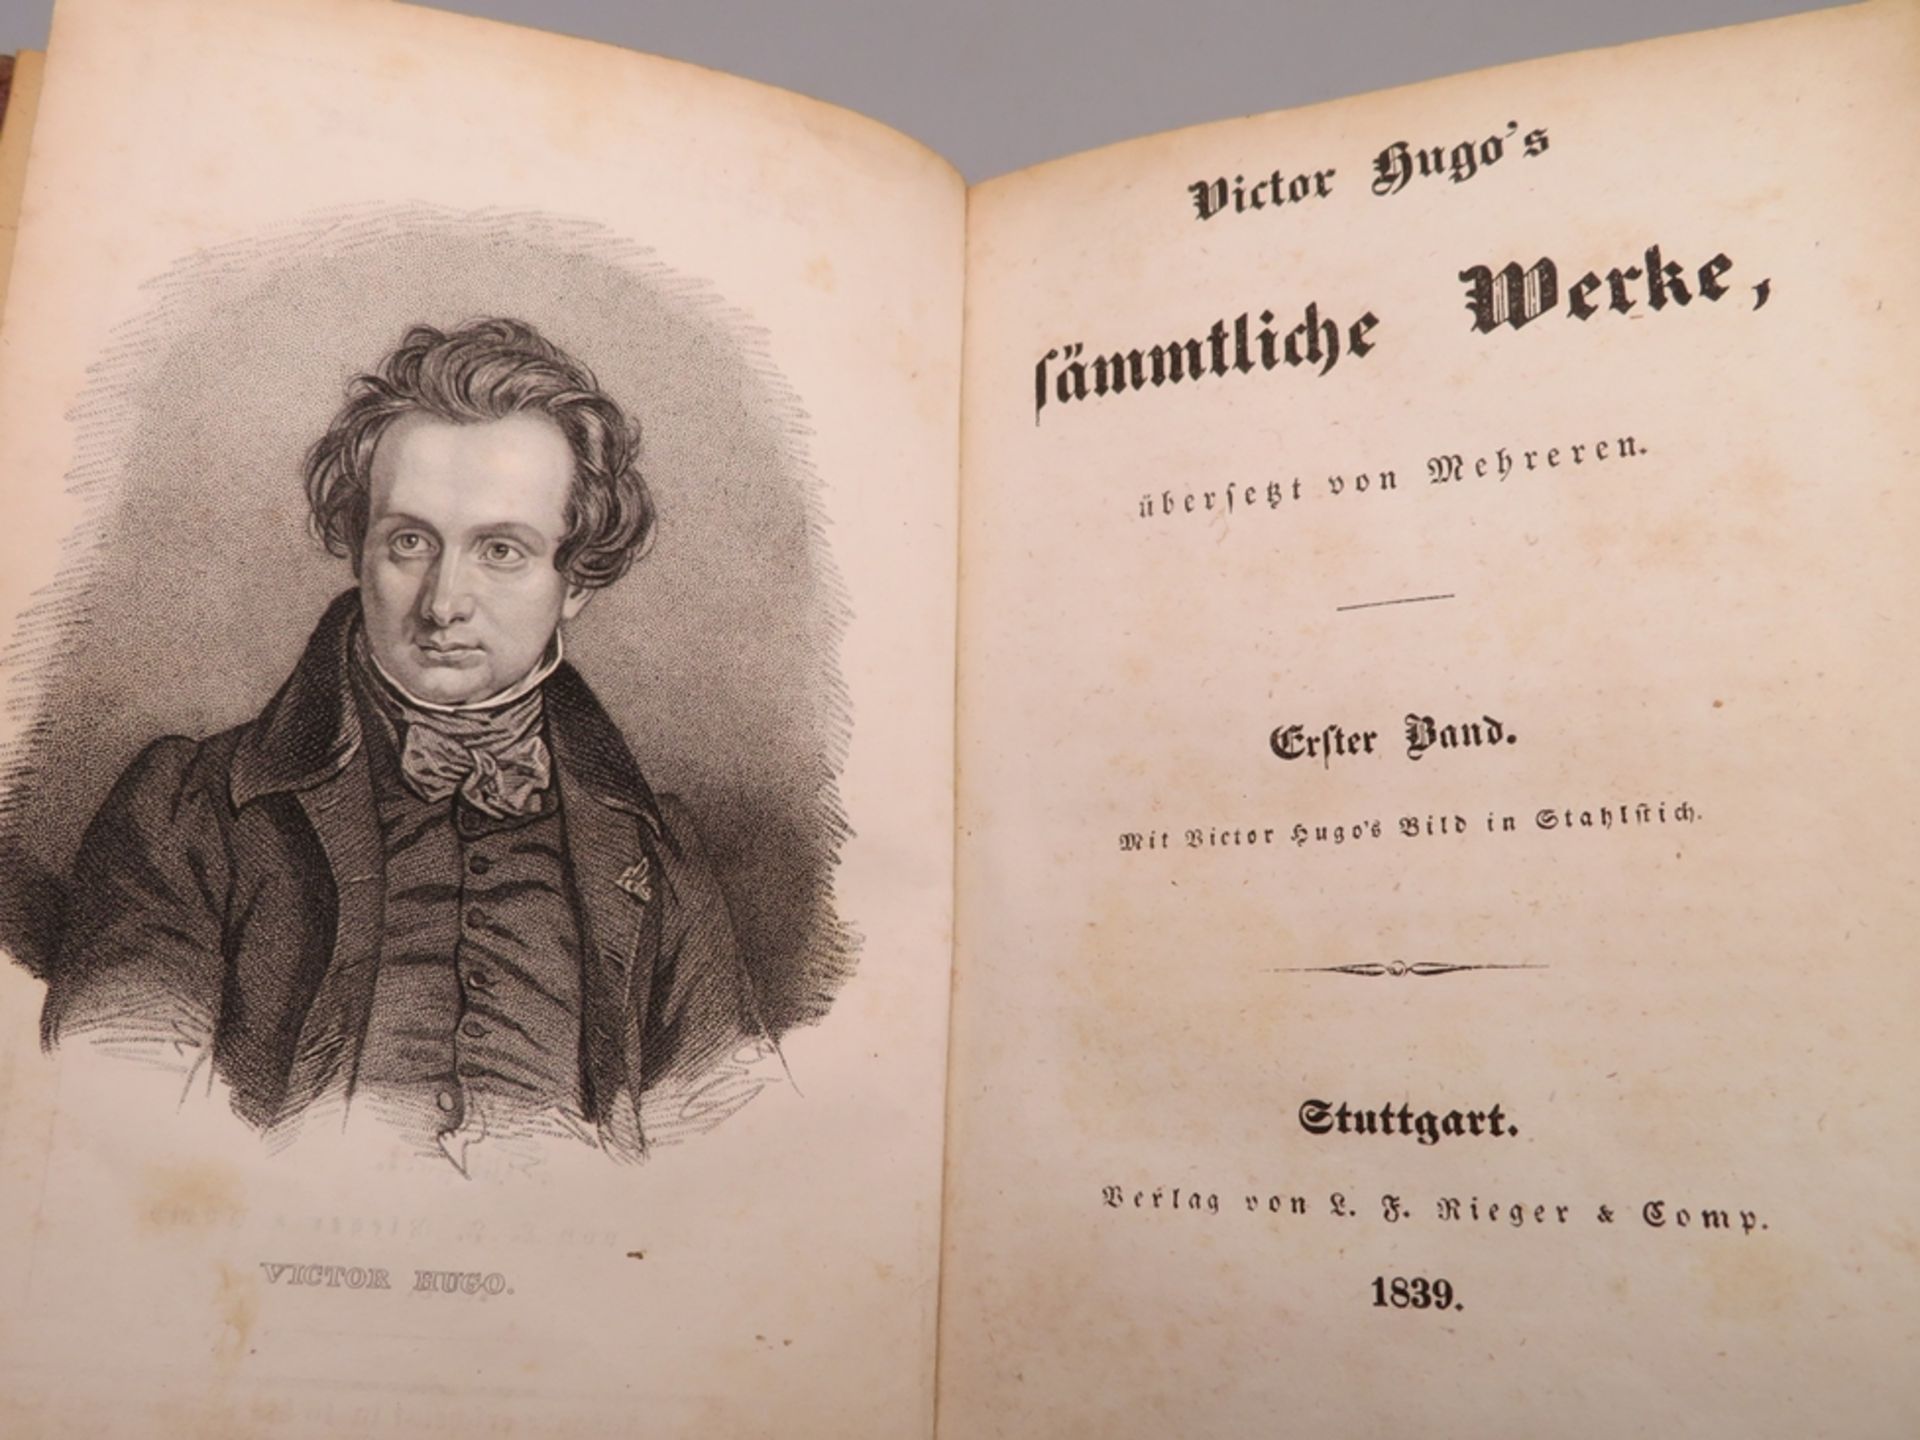 12 Bd., Victor Hugo's Sämmtliche Werke übersetzt von mehreren. Bd. 1 bis 12, Stuttgart 1840. - Bild 2 aus 2